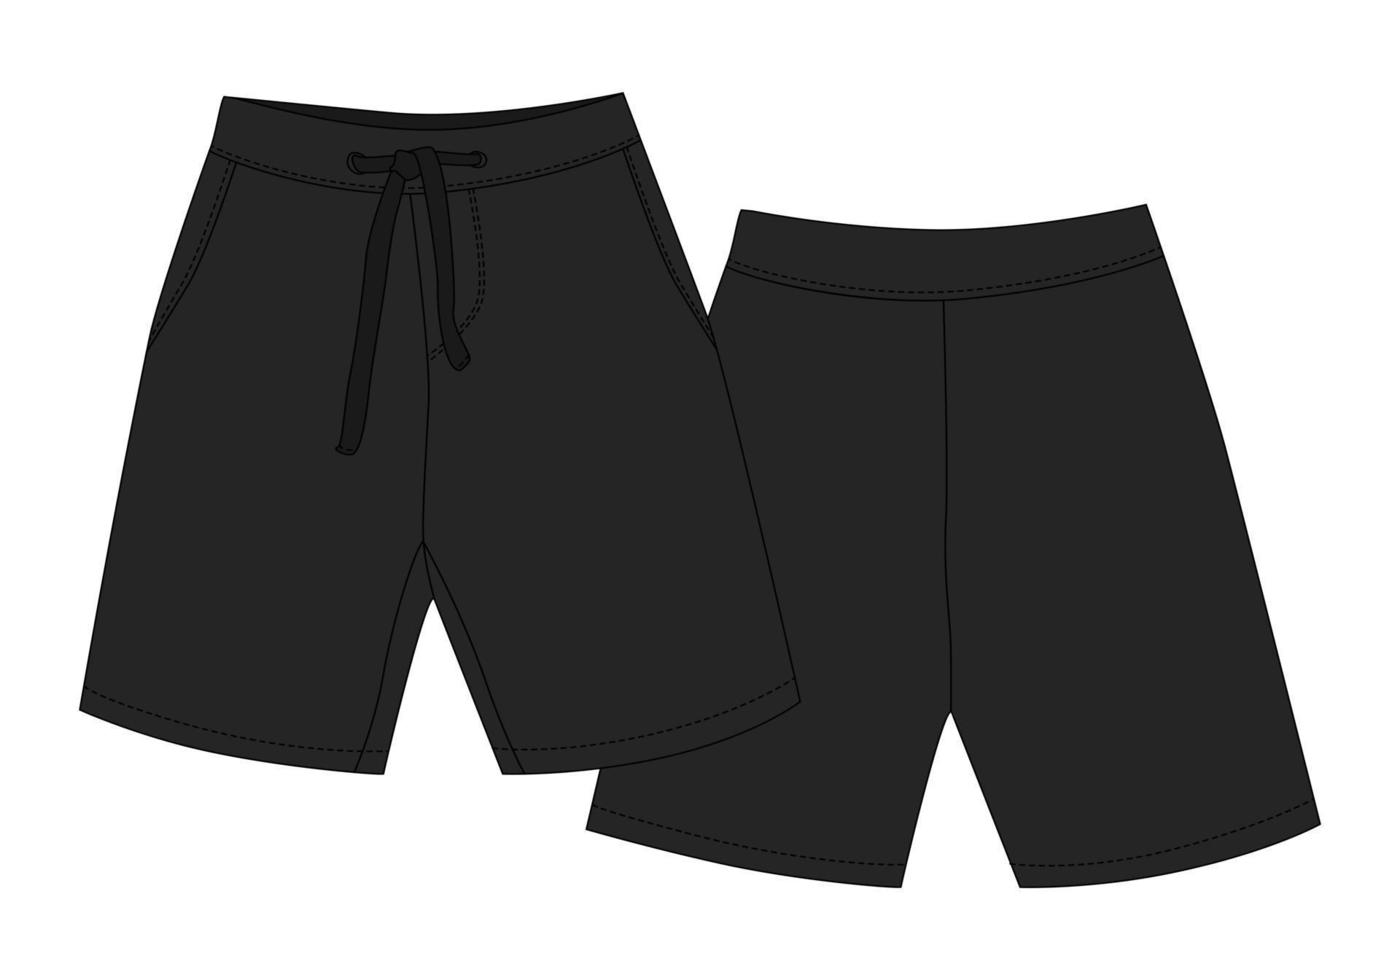 technische schets sport shorts broek ontwerp. zwarte kleur. jongenskleding sjabloon. vector